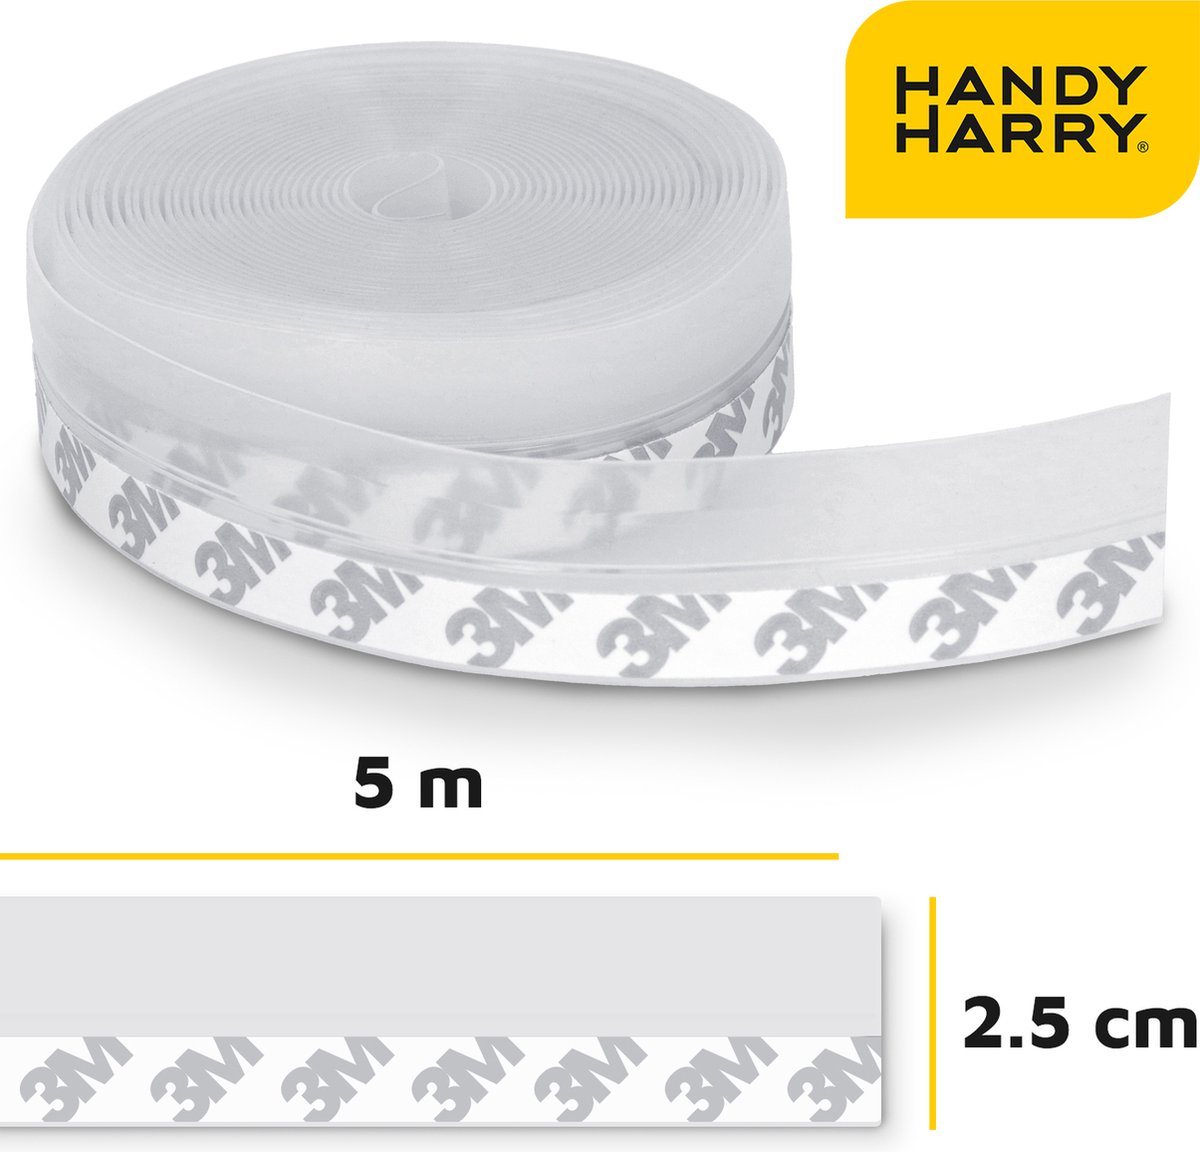 HANDY HARRY® Tochtstrip voor deuren - 5m*2.5cm - Transparant - Zelfklevende tochtwering - Tochtstopper